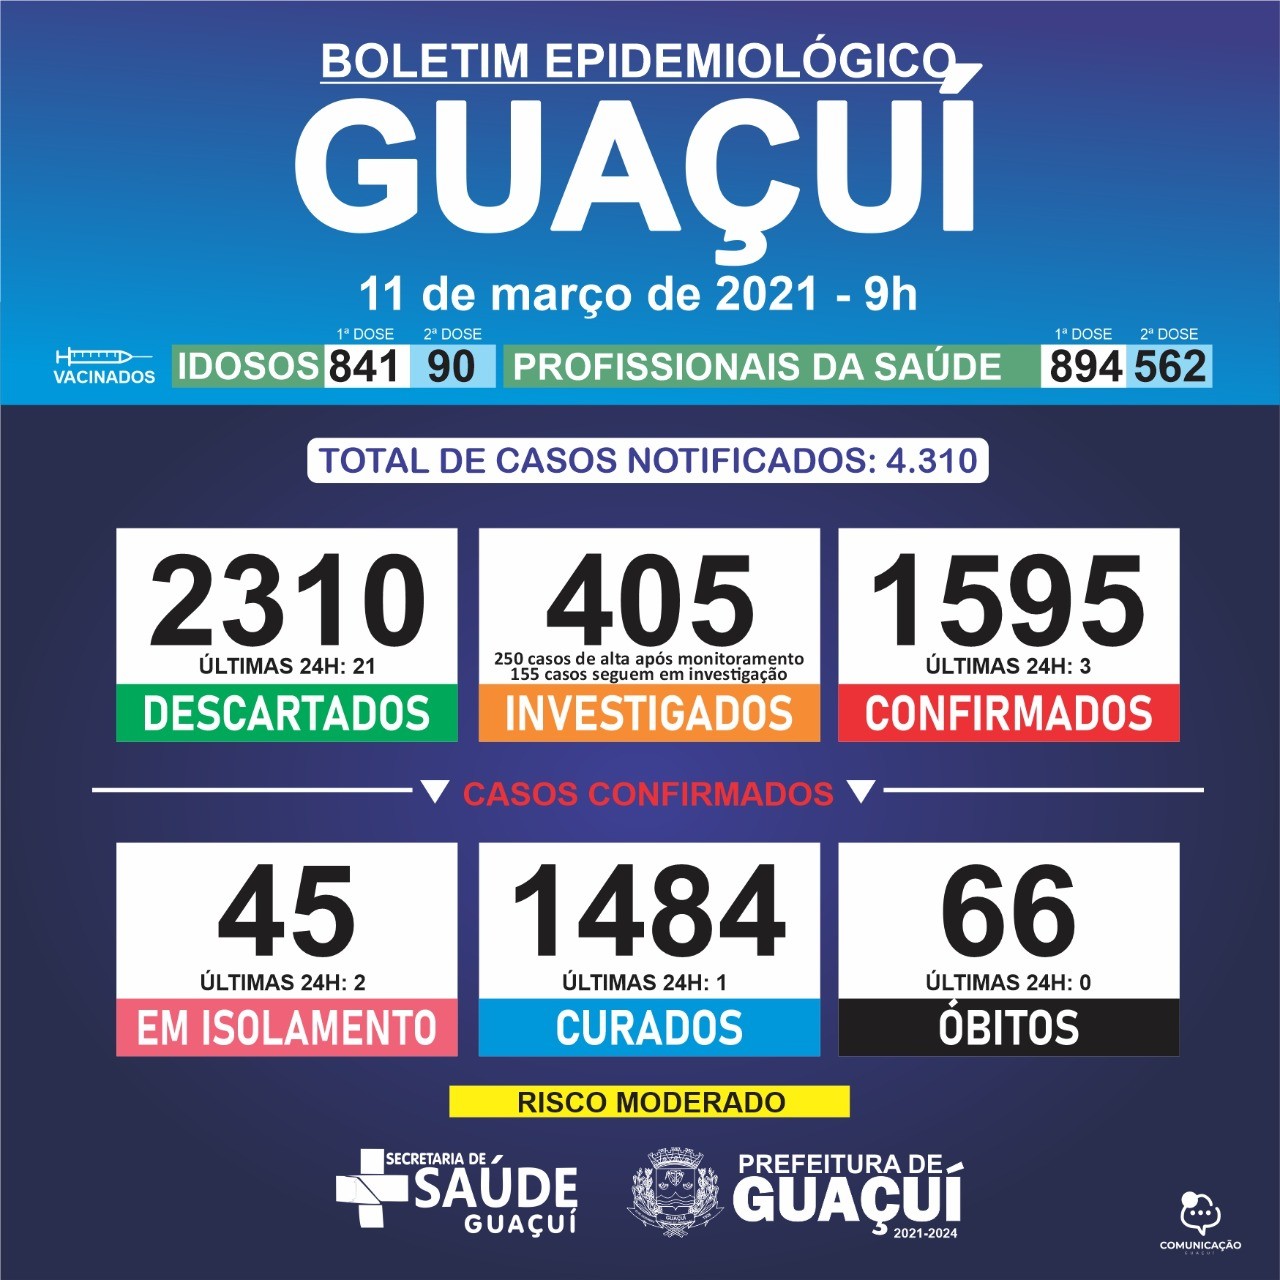 Boletim Epidemiológico 11/03/21: Guaçuí registra 1 curado e 3 casos confirmados de Covid-19 nas últimas 24 horas